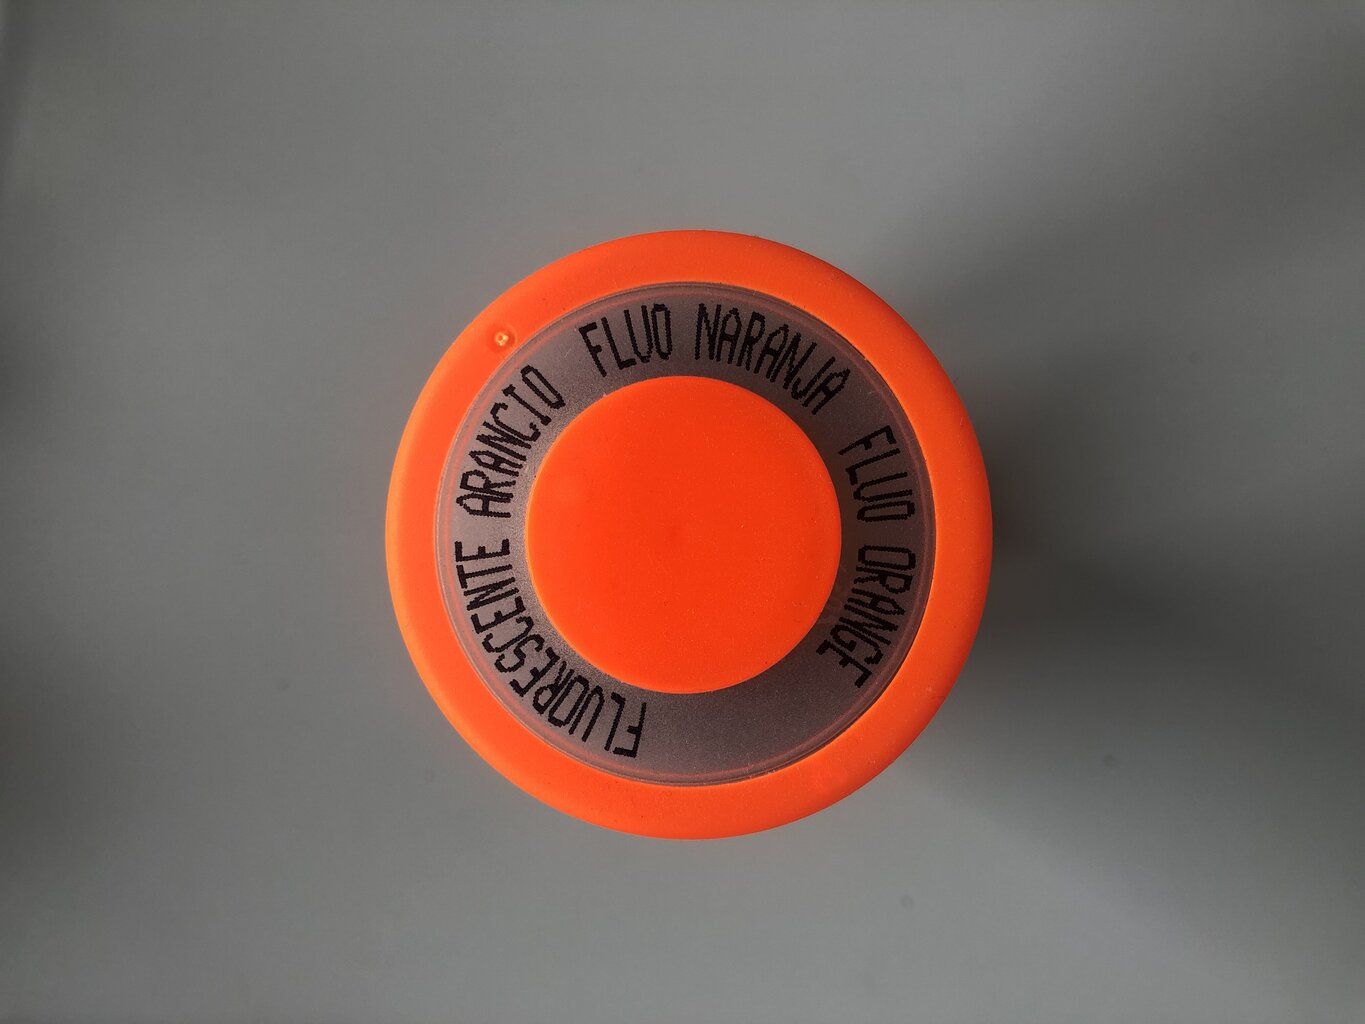 Fluorescentiniai dažai V400FLUOR1 oranžinė spalva, 400 ml kaina ir informacija | Dažai | pigu.lt